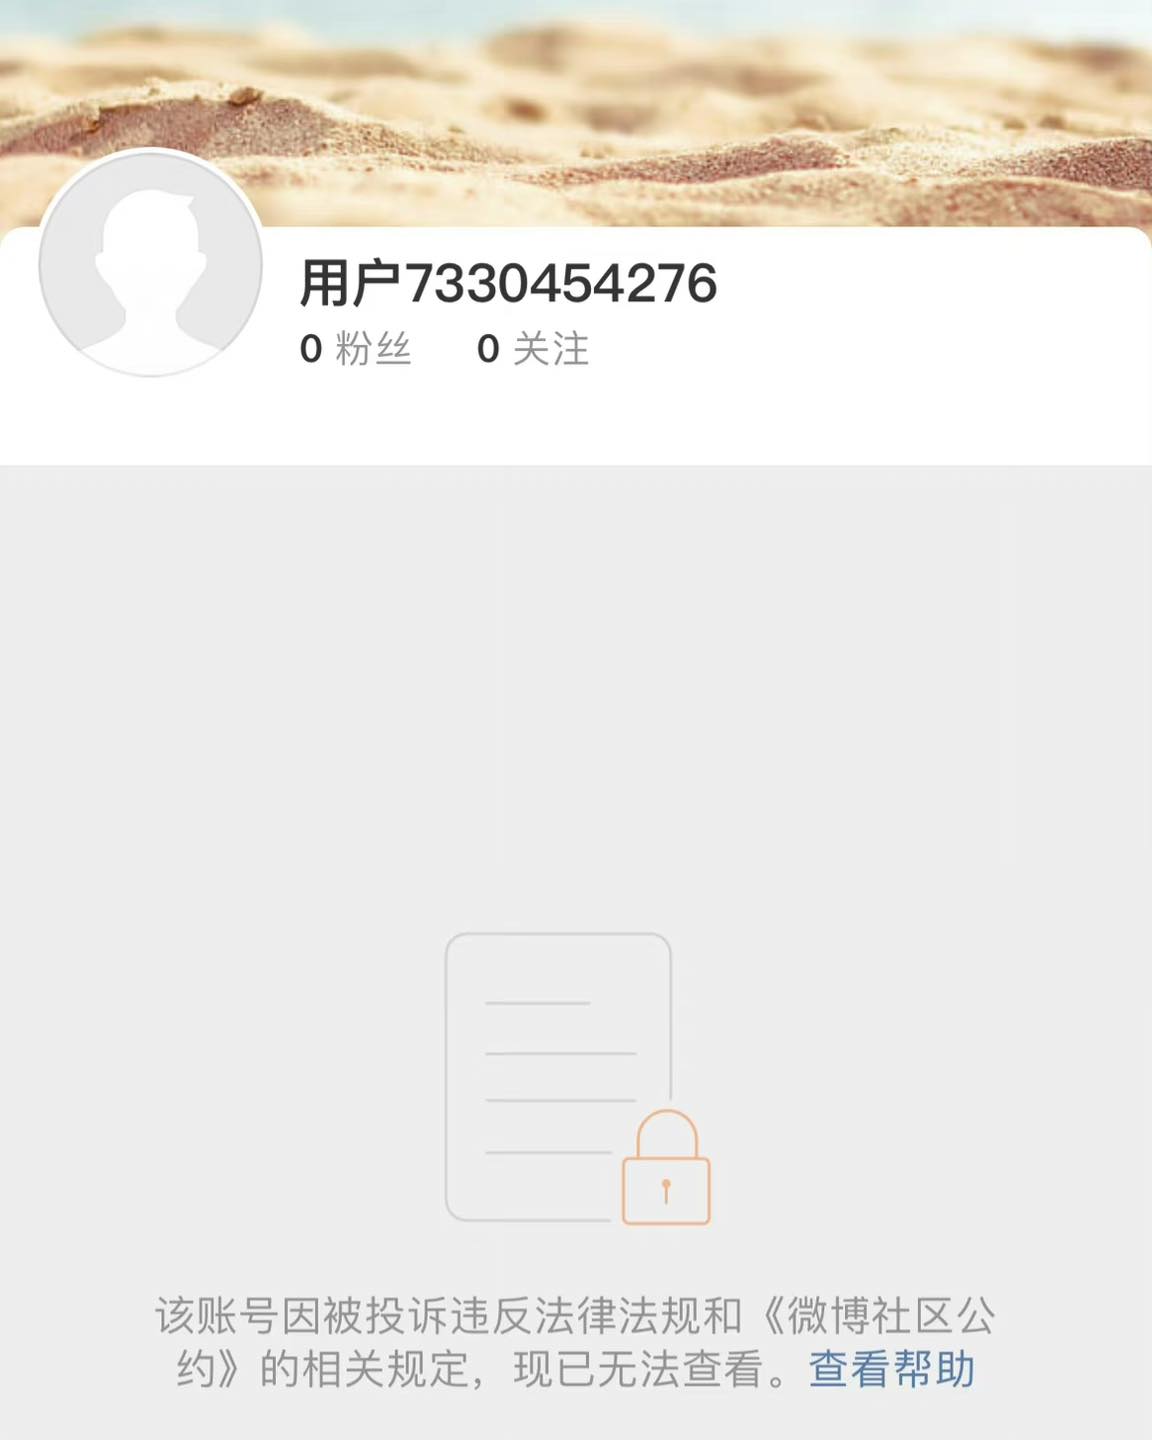 Ngoại trừ 2 tài khoản của Lisa thì những tài khoản Weibo của 3 thành viên BLACKPINK còn lại vẫn hoạt động bình thường